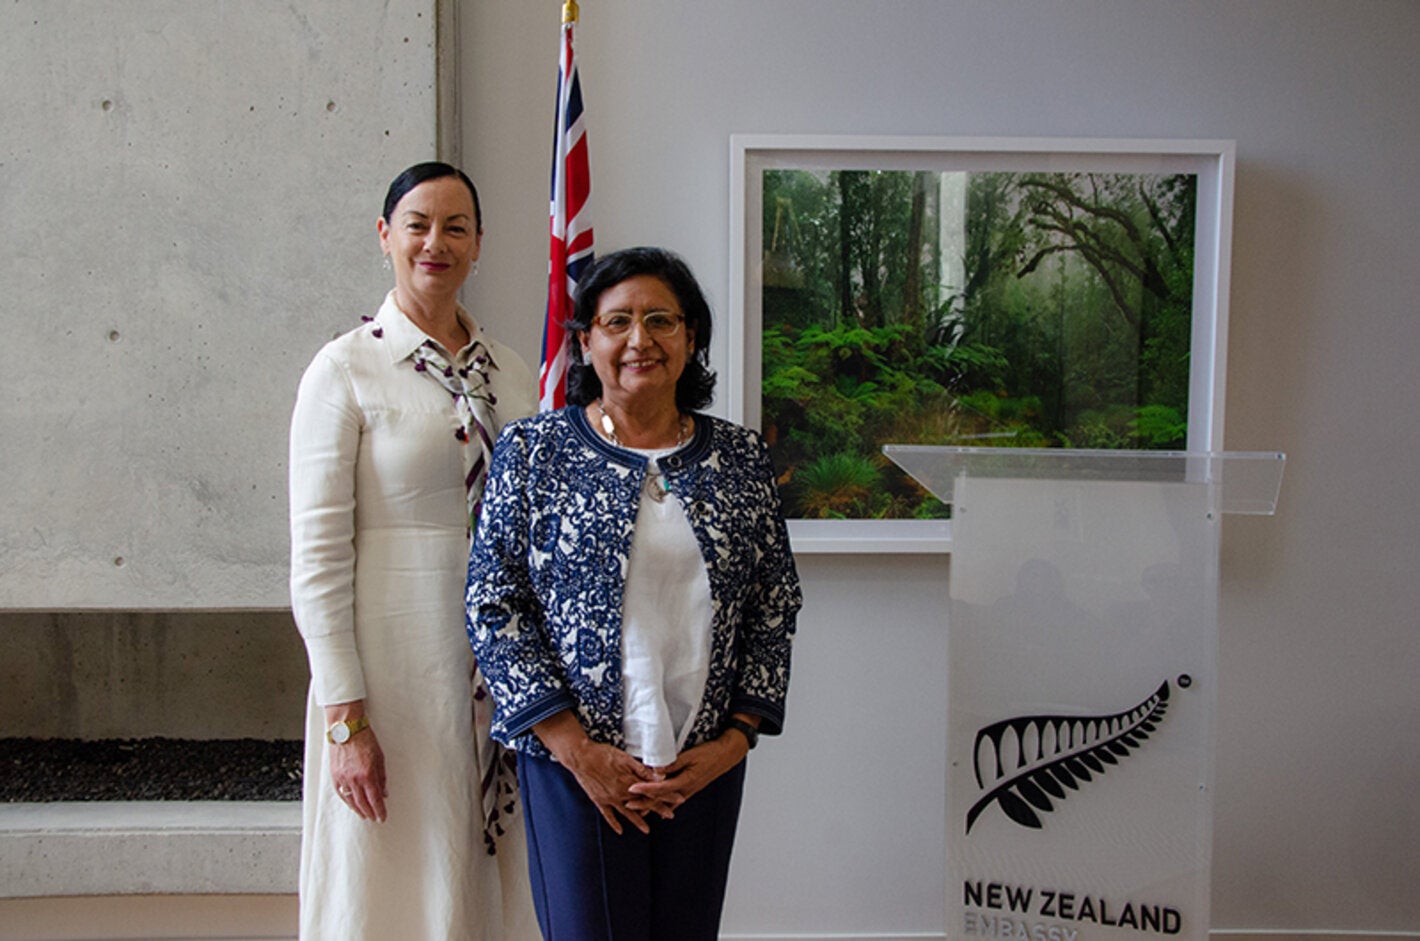  Embajada de Nueva Zelandia en Colombia y PWR Colombia